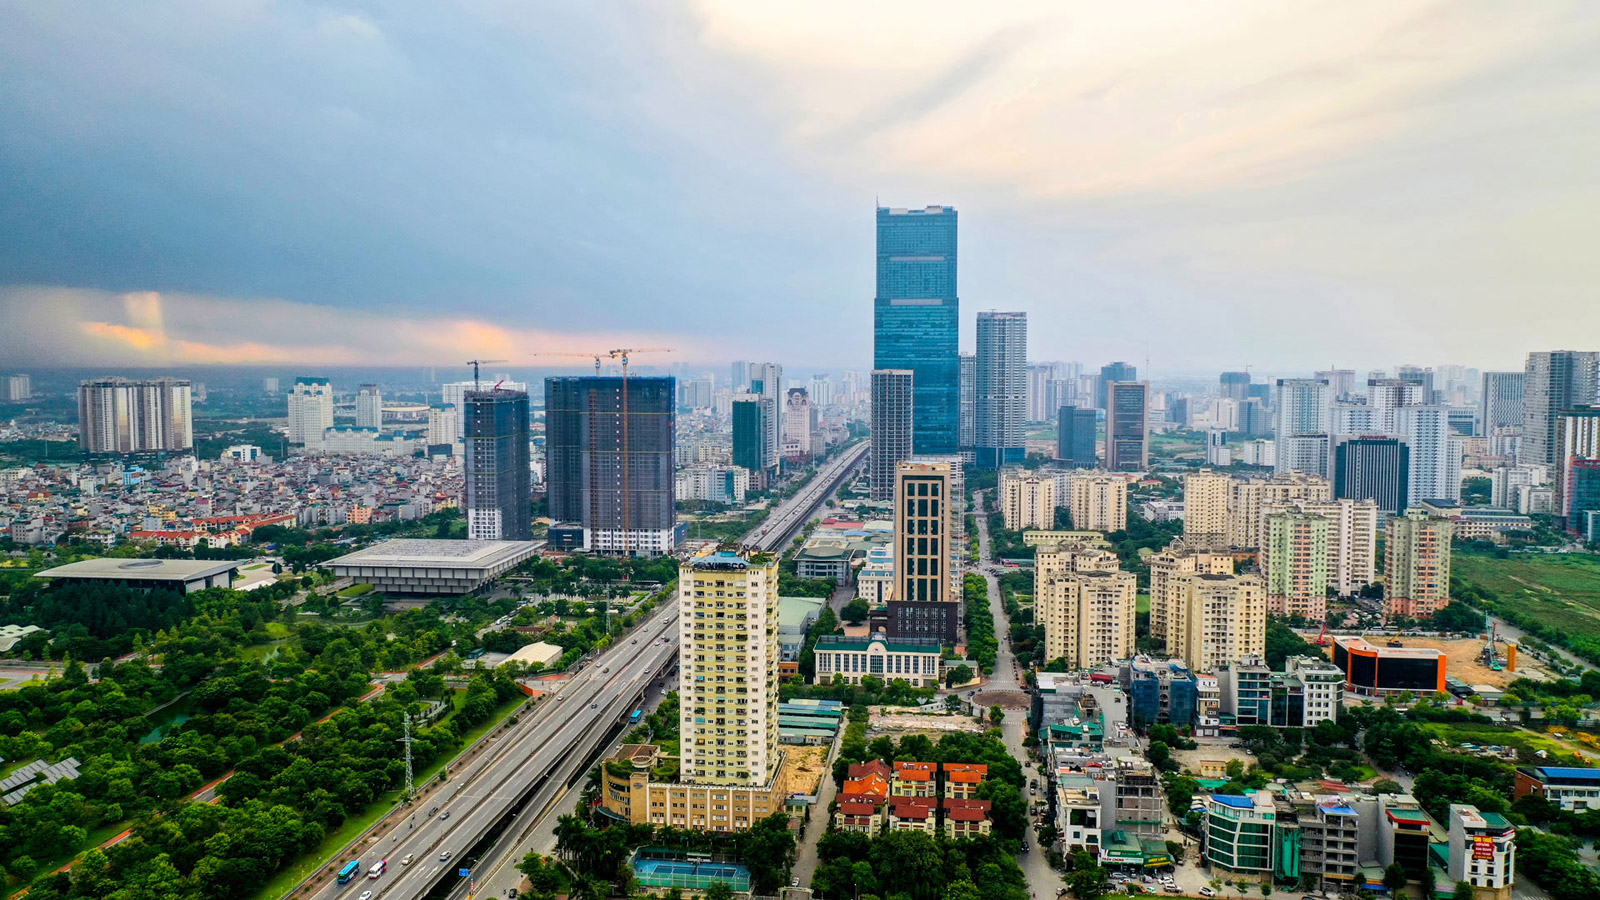  Phát triển Thủ đô Hà Nội trở thành đô thị hiện đại, thông minh, dẫn dắt và tạo hiệu ứng lan toả, liên kết vùng đô thị. (Ảnh minh họa)